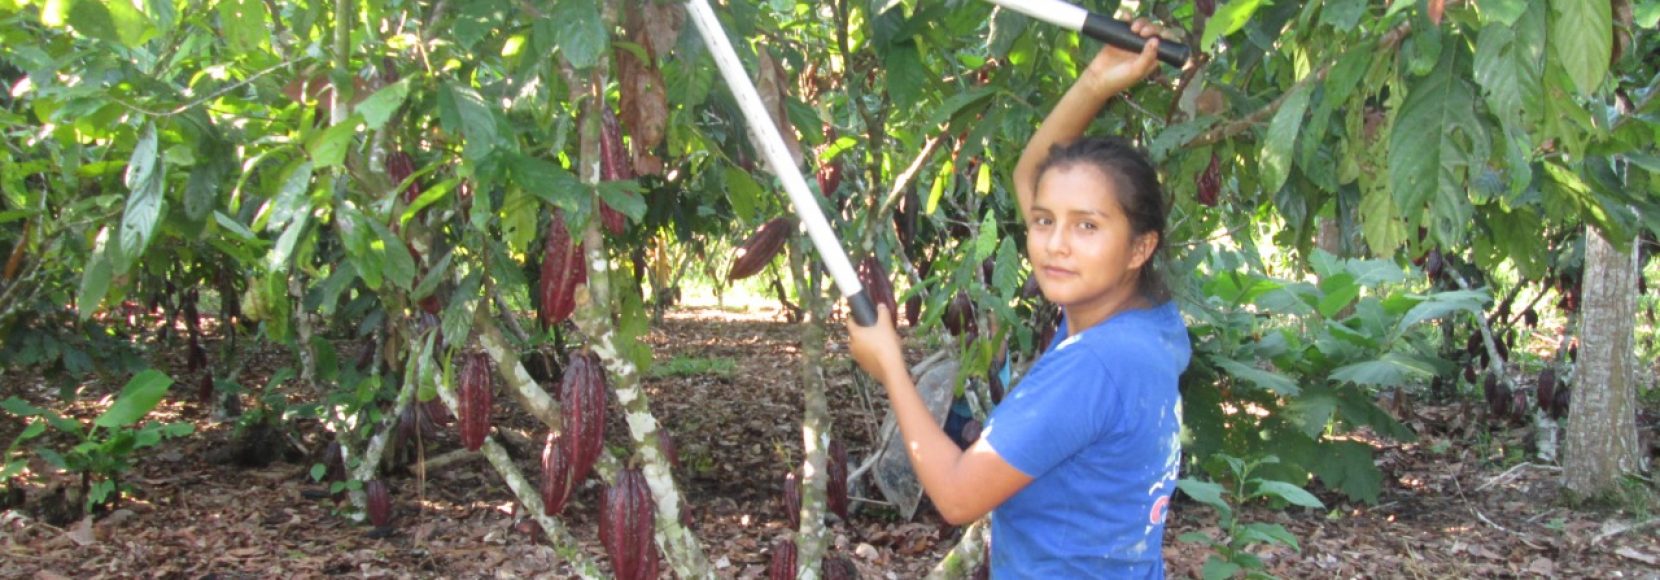 Dara-Obispo-woman-farmer-cacao-peru-amazon